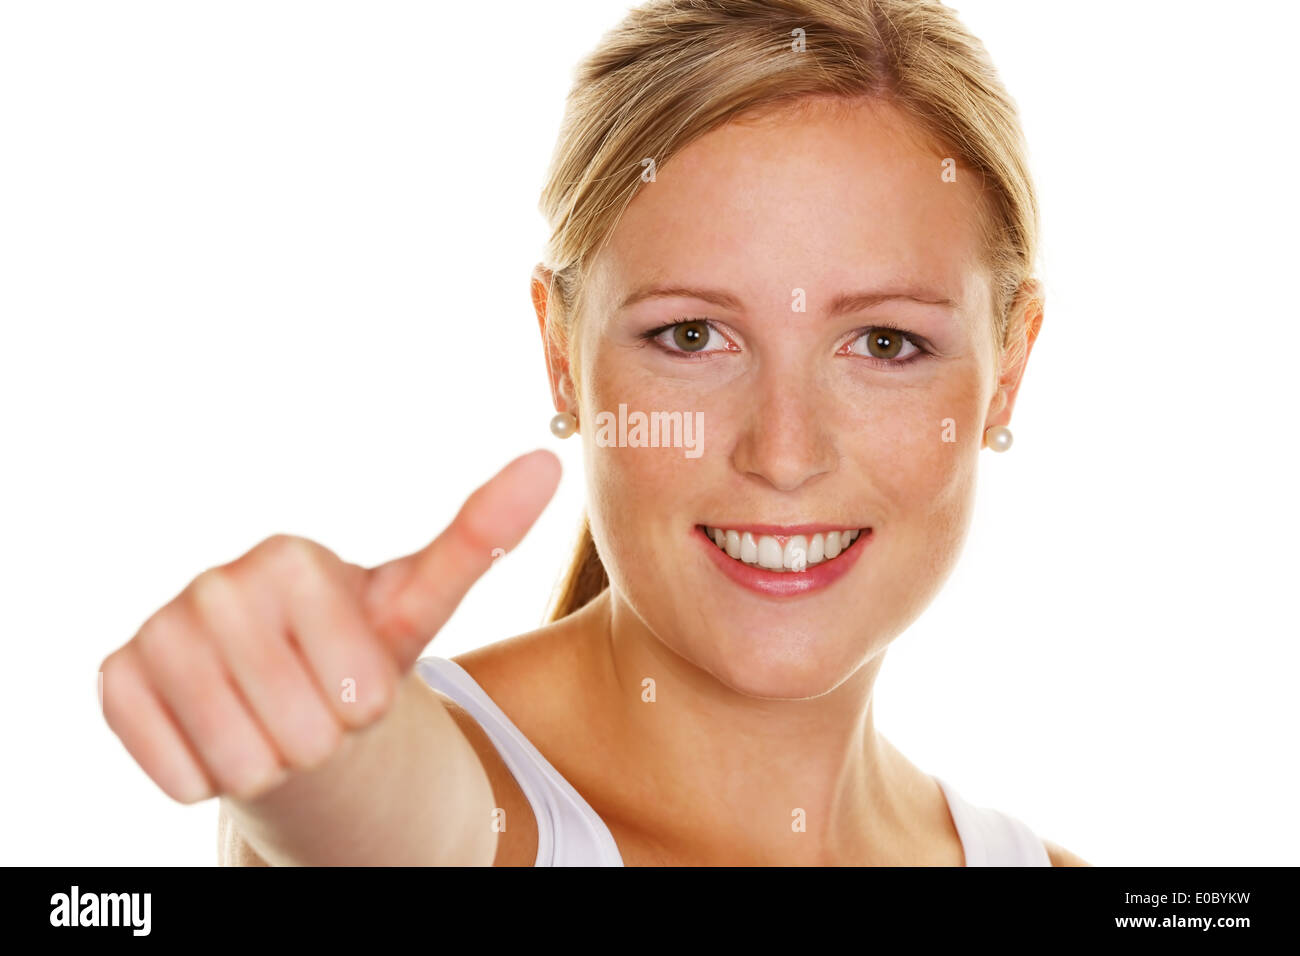 Una giovane donna di successo tiene le dita incrociate verso l'alto. Immagine simbolica di successo più esenti a sfondo bianco, Eine Foto Stock